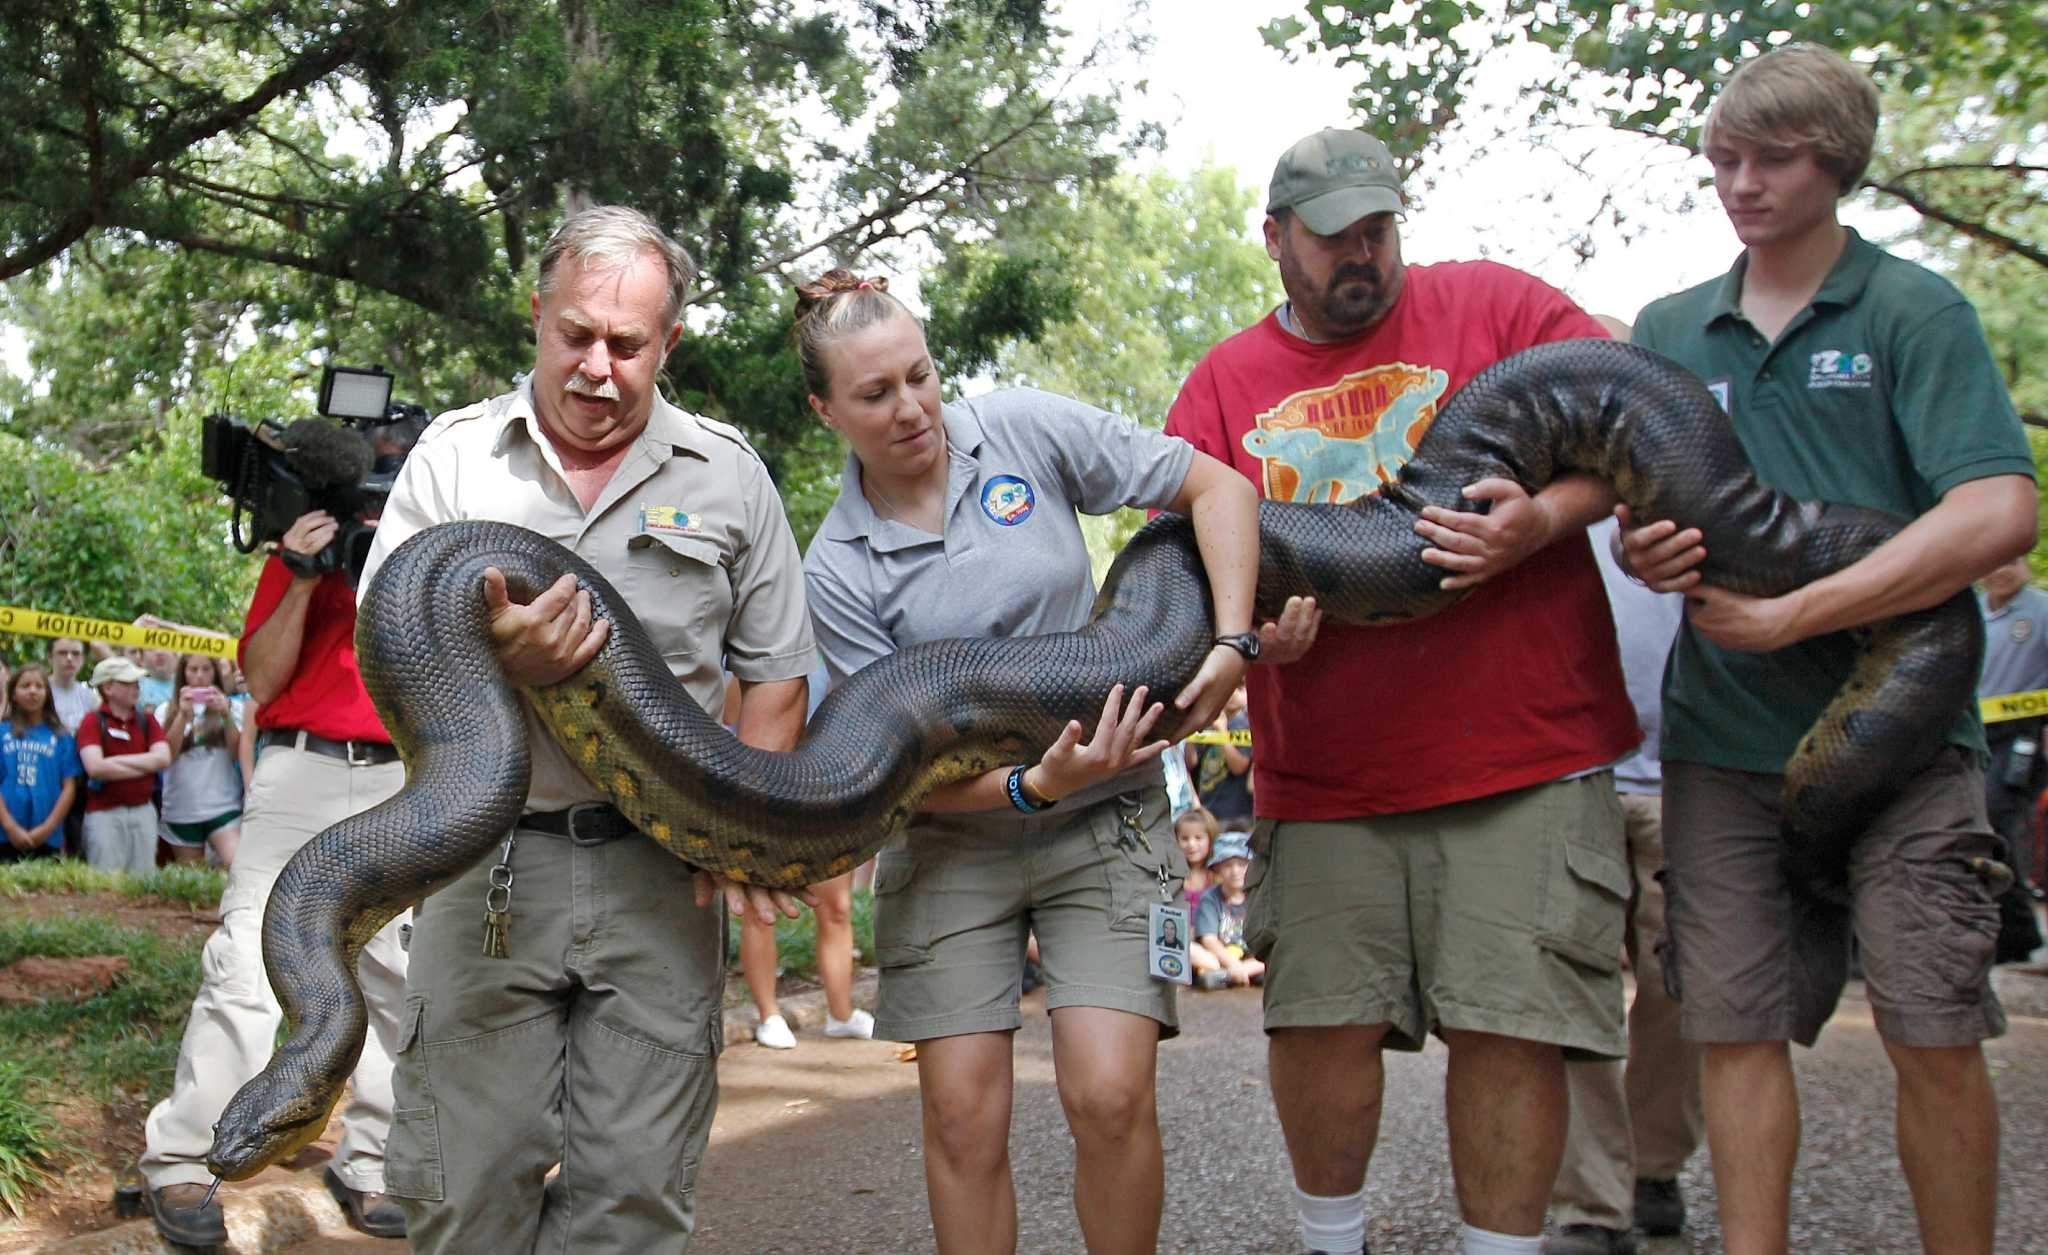 Самых крупных змей в мире